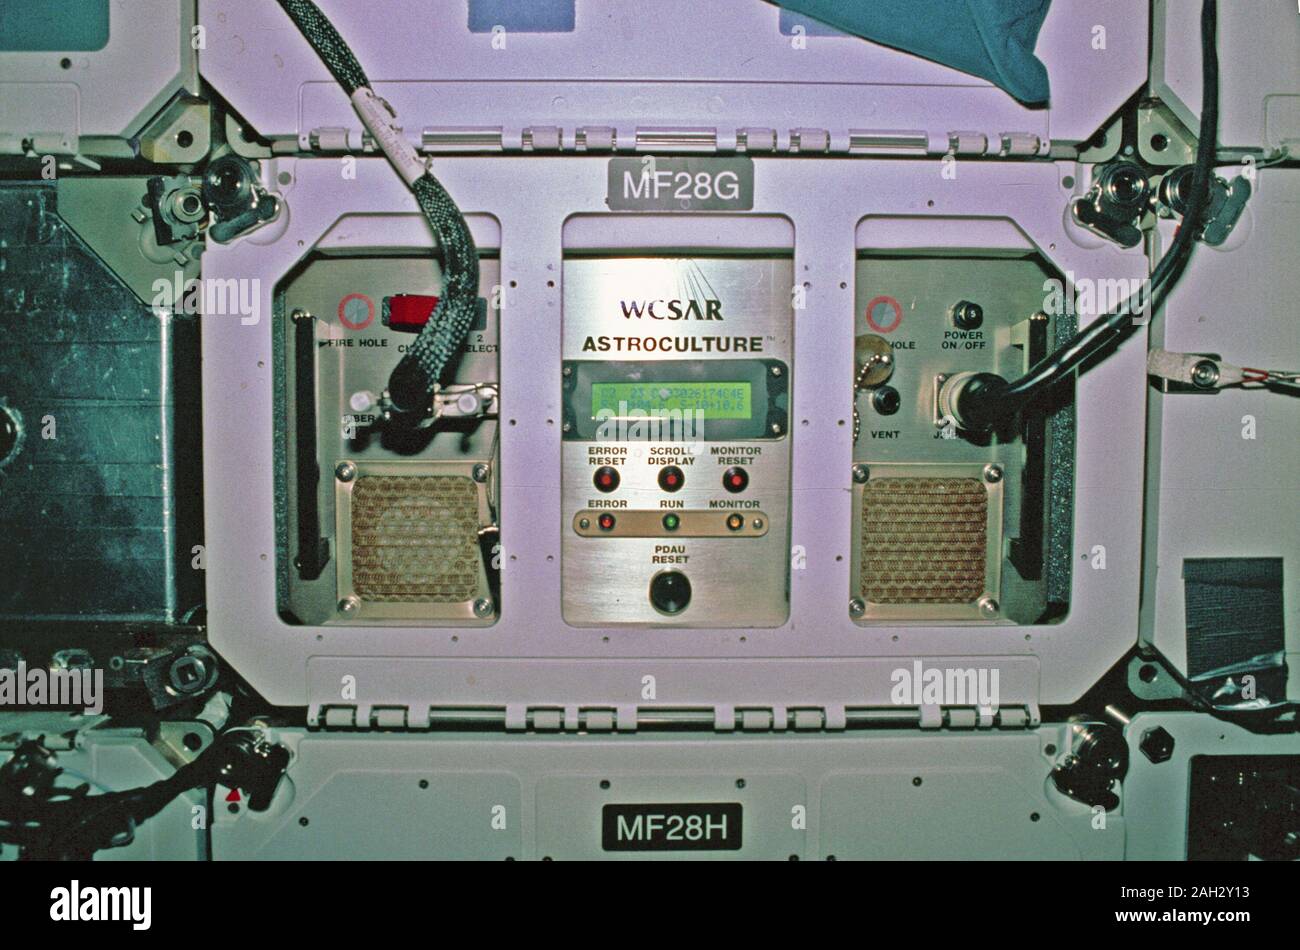 1992 - i primi Stati Uniti microgravità (Laboratorio USML-1) era uno della NASA per la scienza e la tecnologia dei programmi che fornito agli scienziati l'opportunità di ricerca varie indagini scientifiche in un ambiente privo di gravità all'interno del modulo Spacelab. Foto Stock